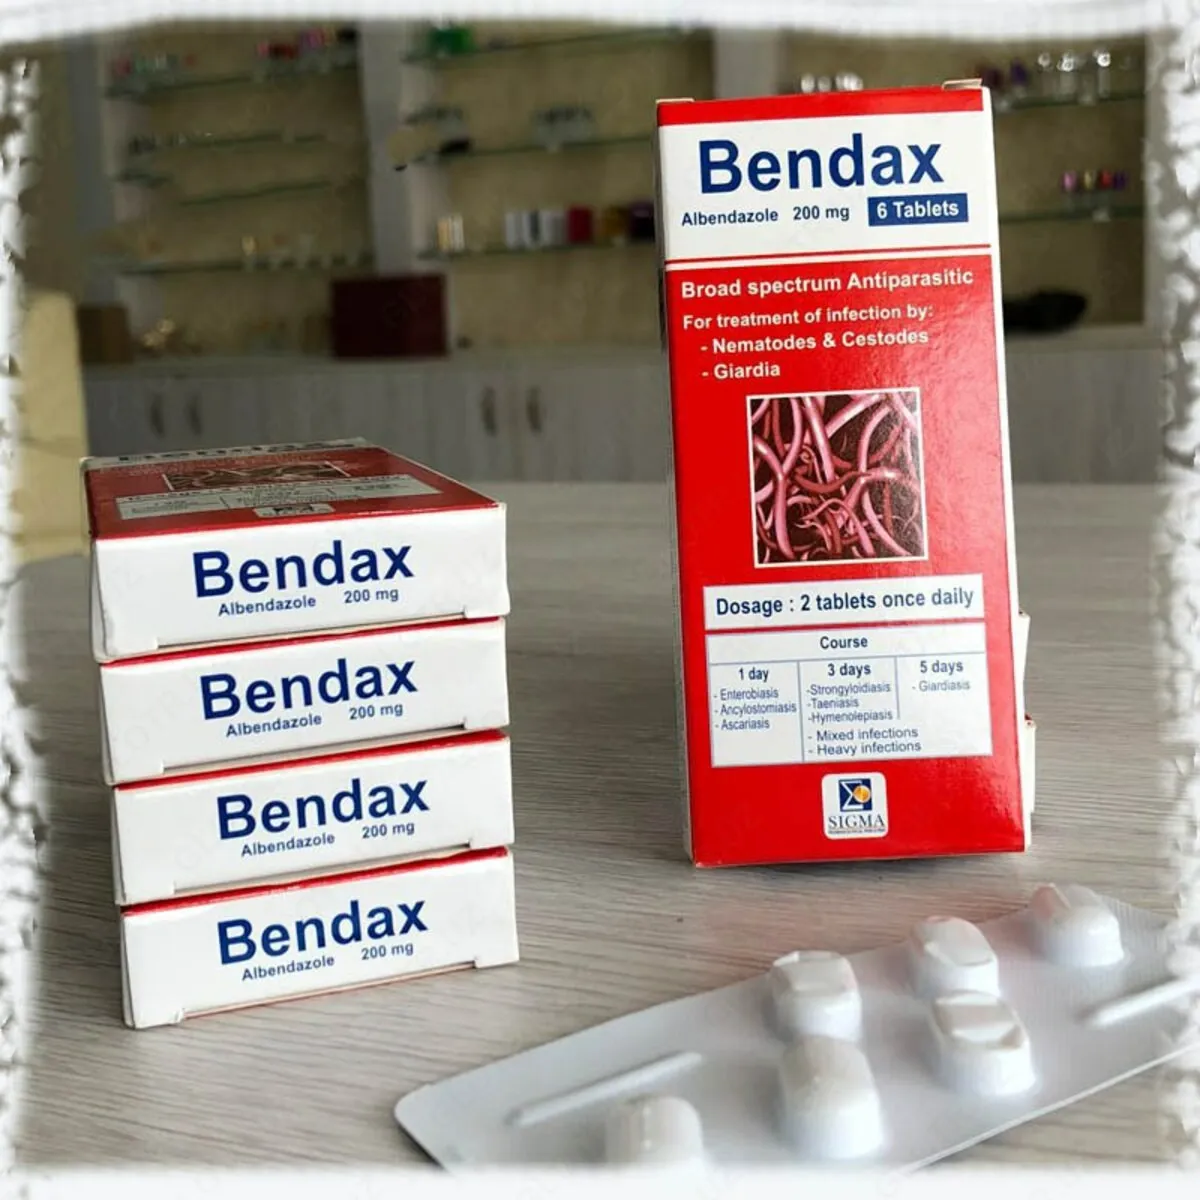 Противоглистный препарат Bendax (6 таблеток)#2